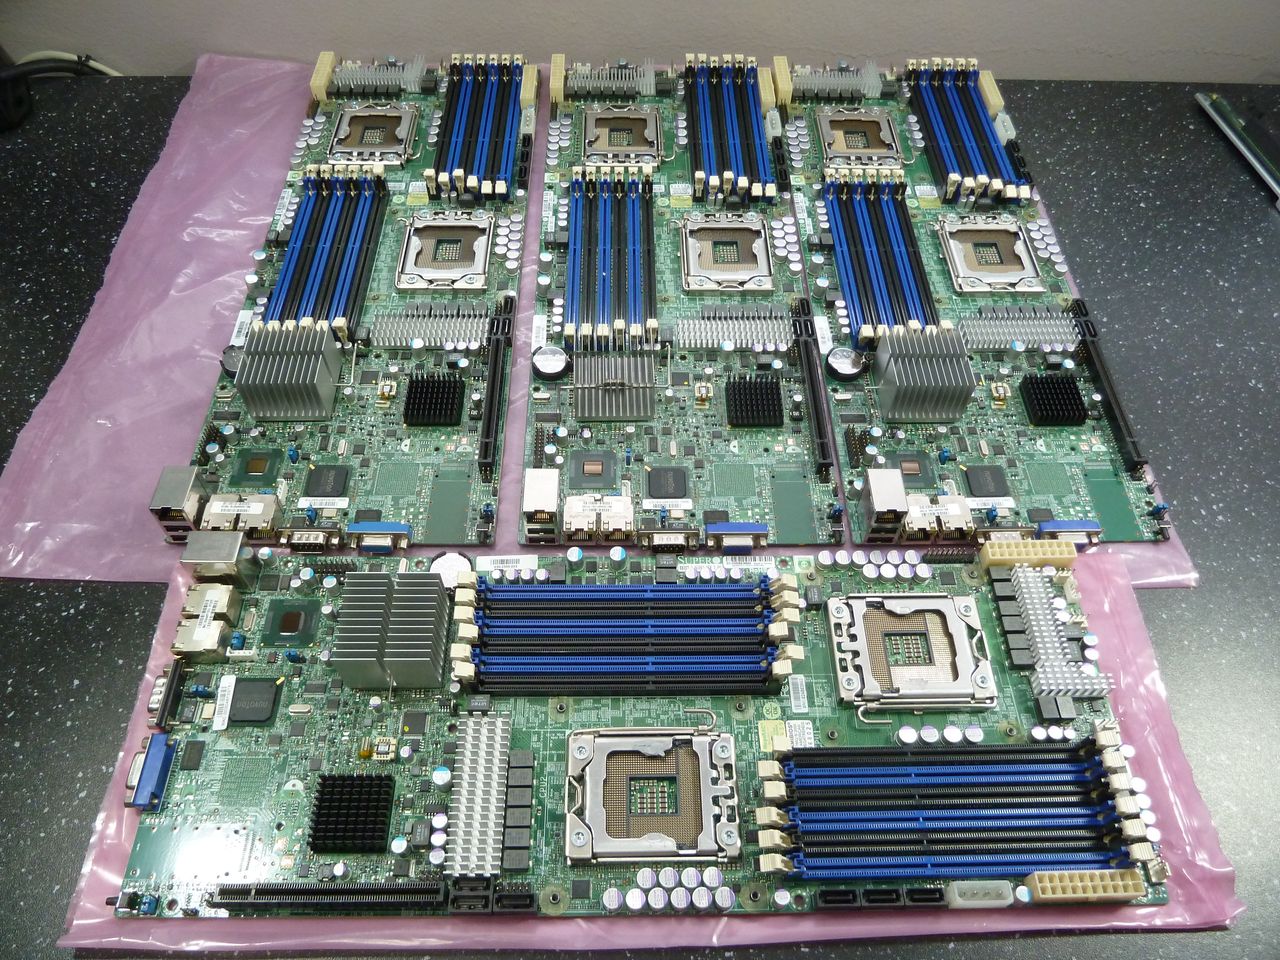 tmb-motherboards.jpg